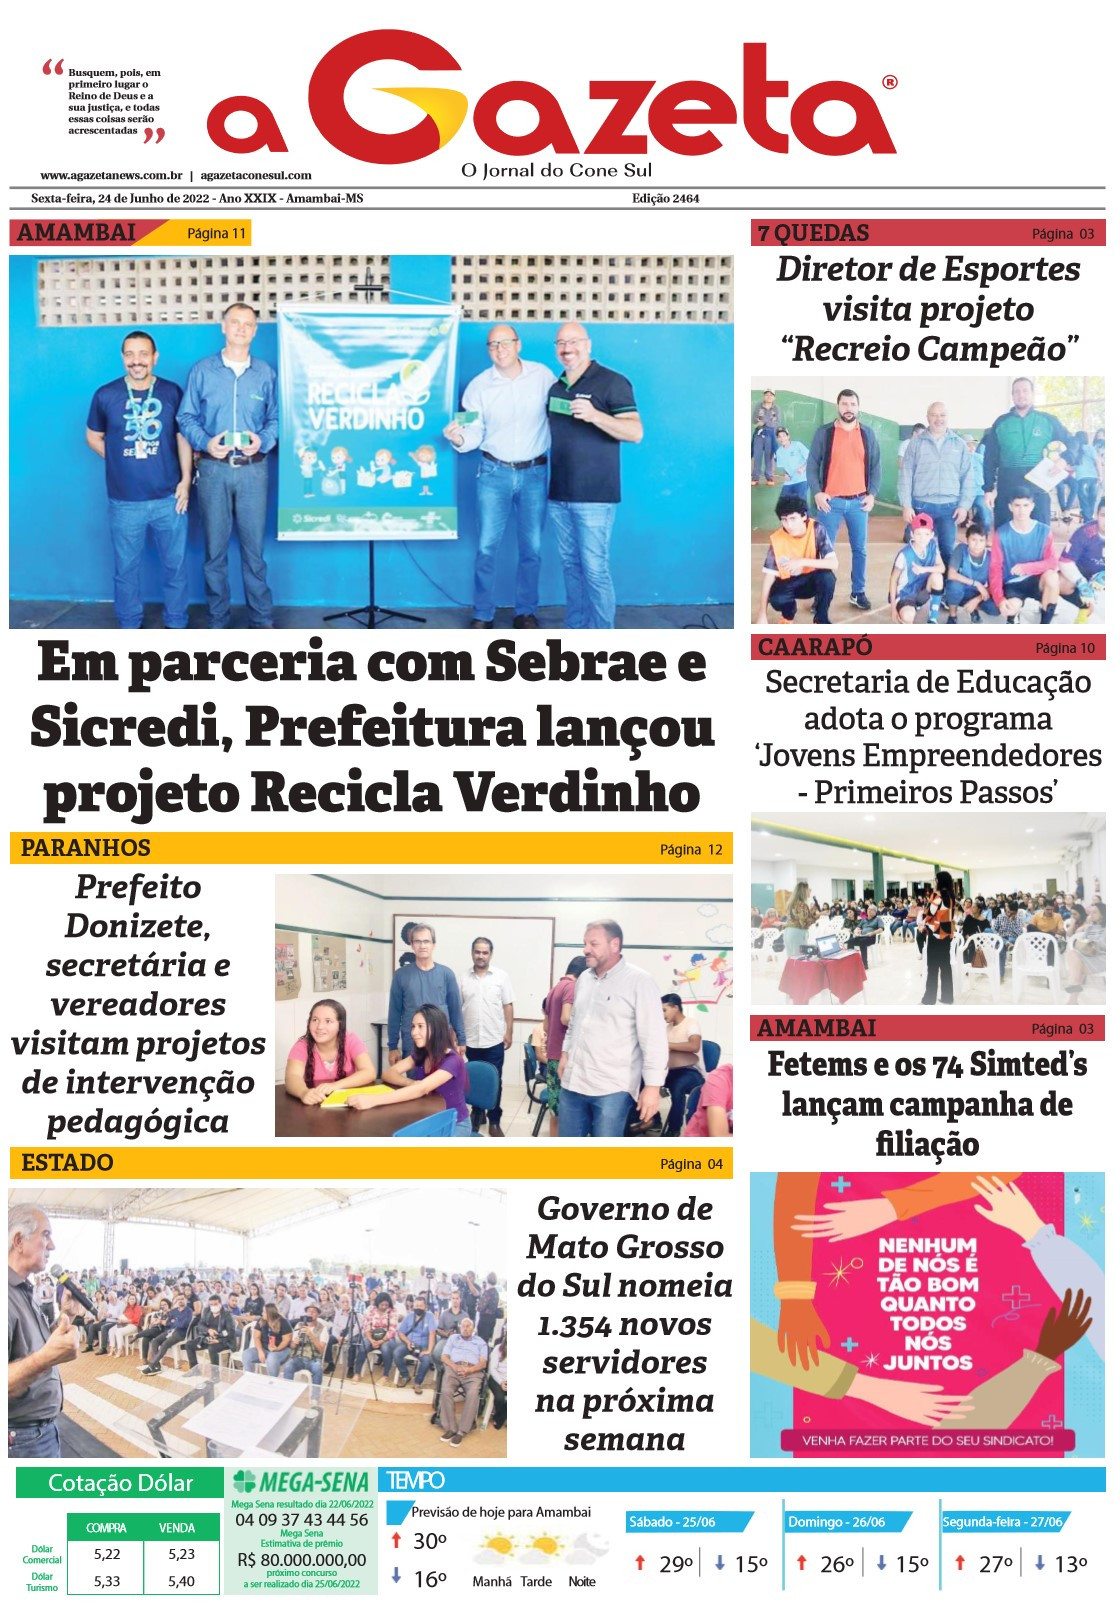 Confira a edição digital do jornal impresso A Gazeta desta sexta-feira, dia 24